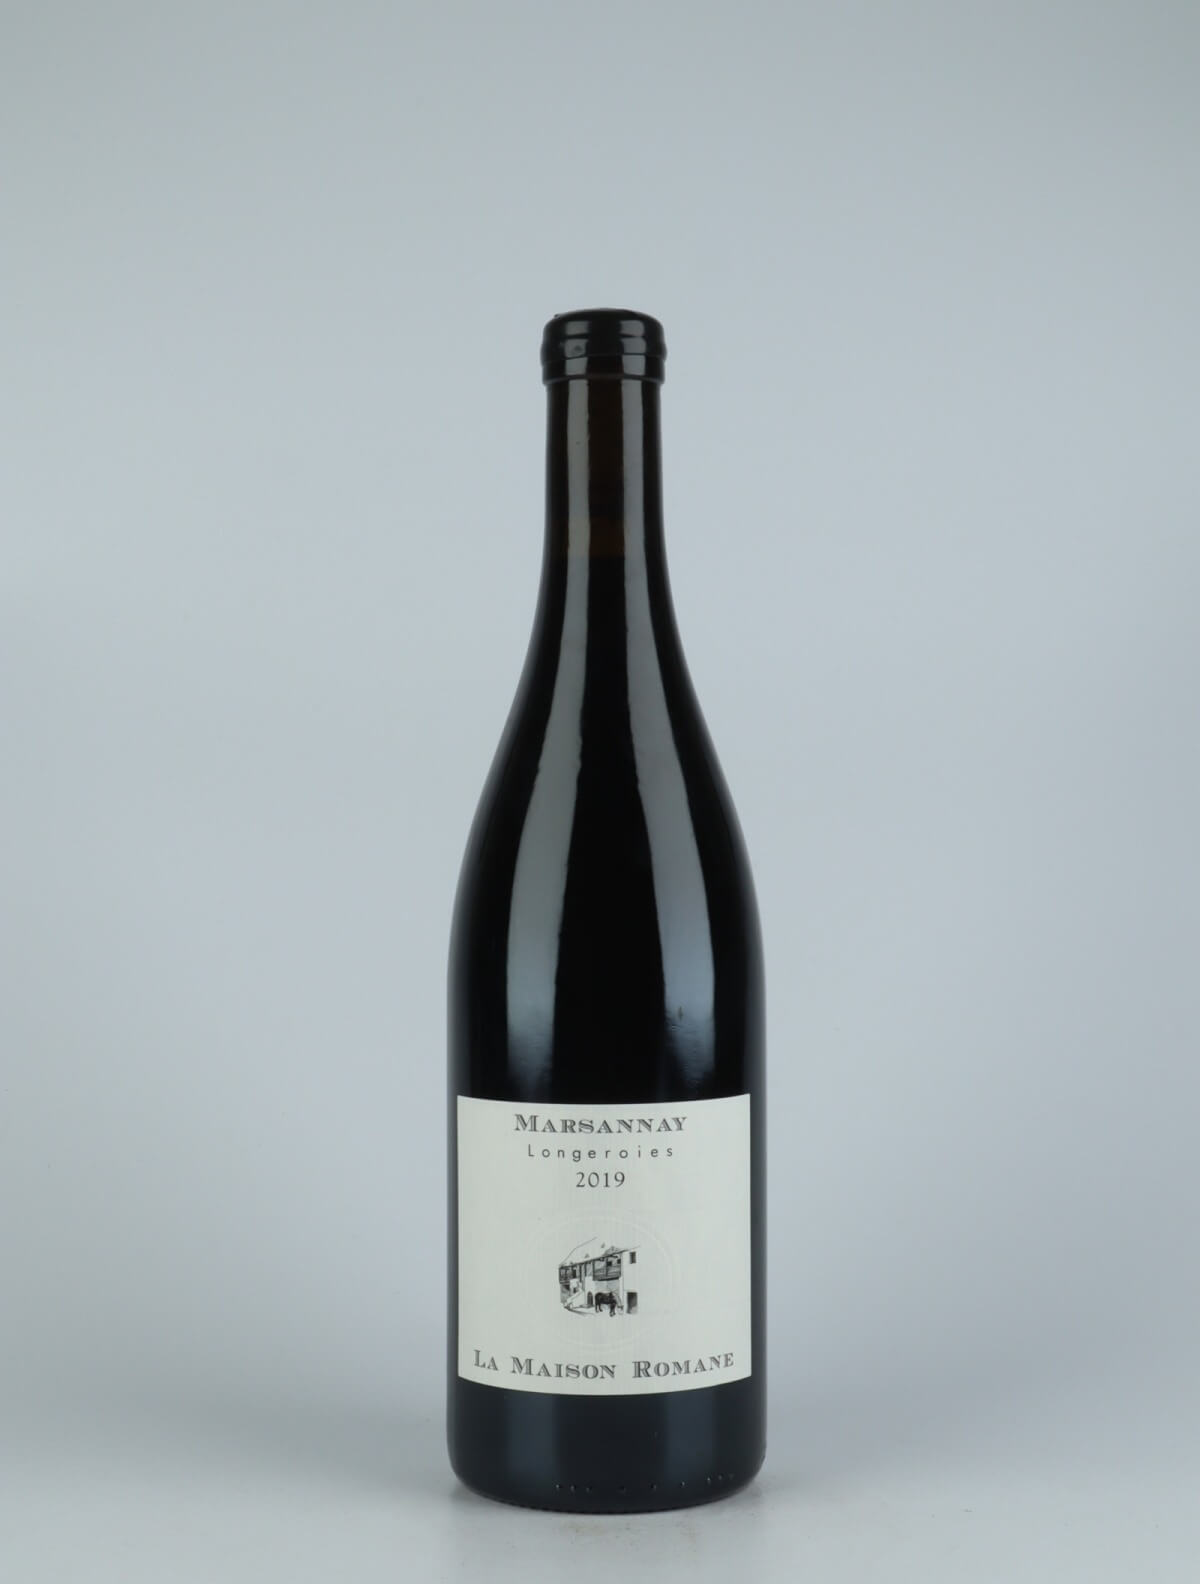 En flaske 2019 Marsannay - Longeroies Rødvin fra La Maison Romane, Bourgogne i Frankrig